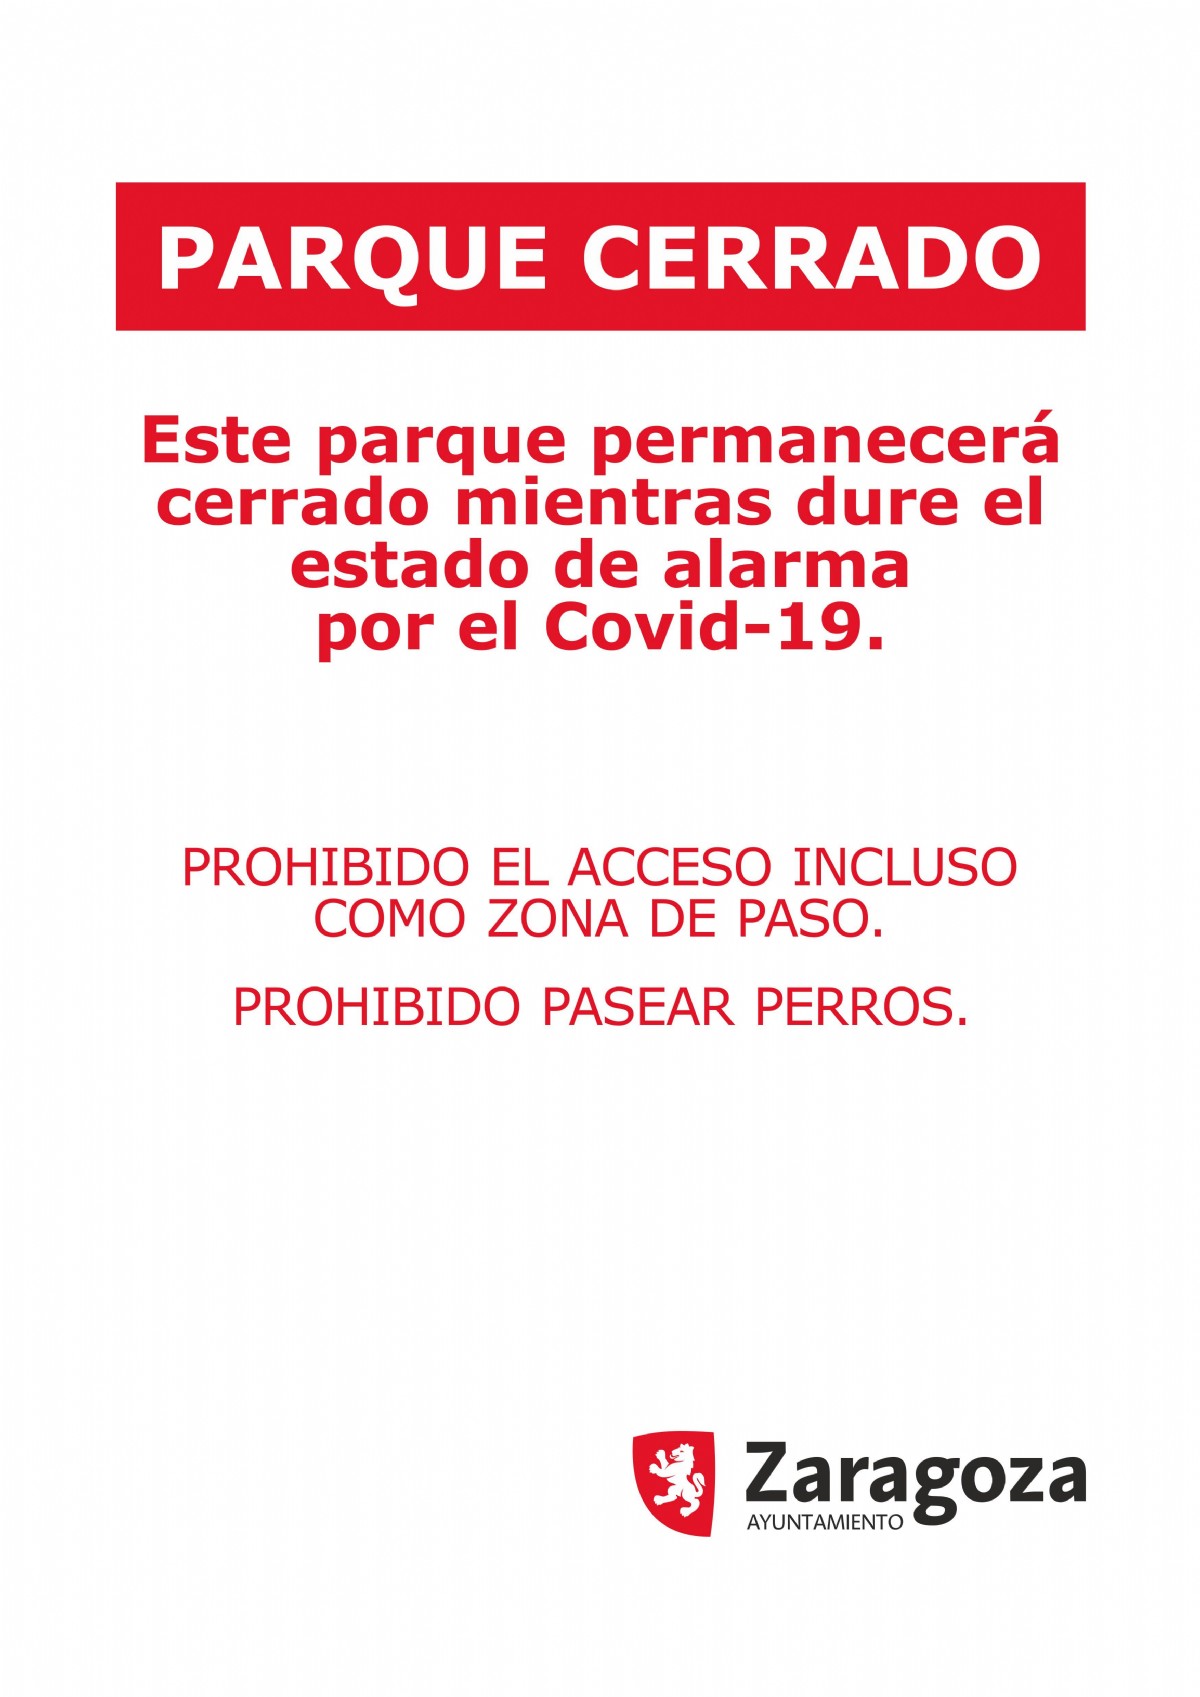 Todos los parques públicos de Zaragoza cierran desde hoy como medida adicional de precaución en la lucha contra el coronavirus